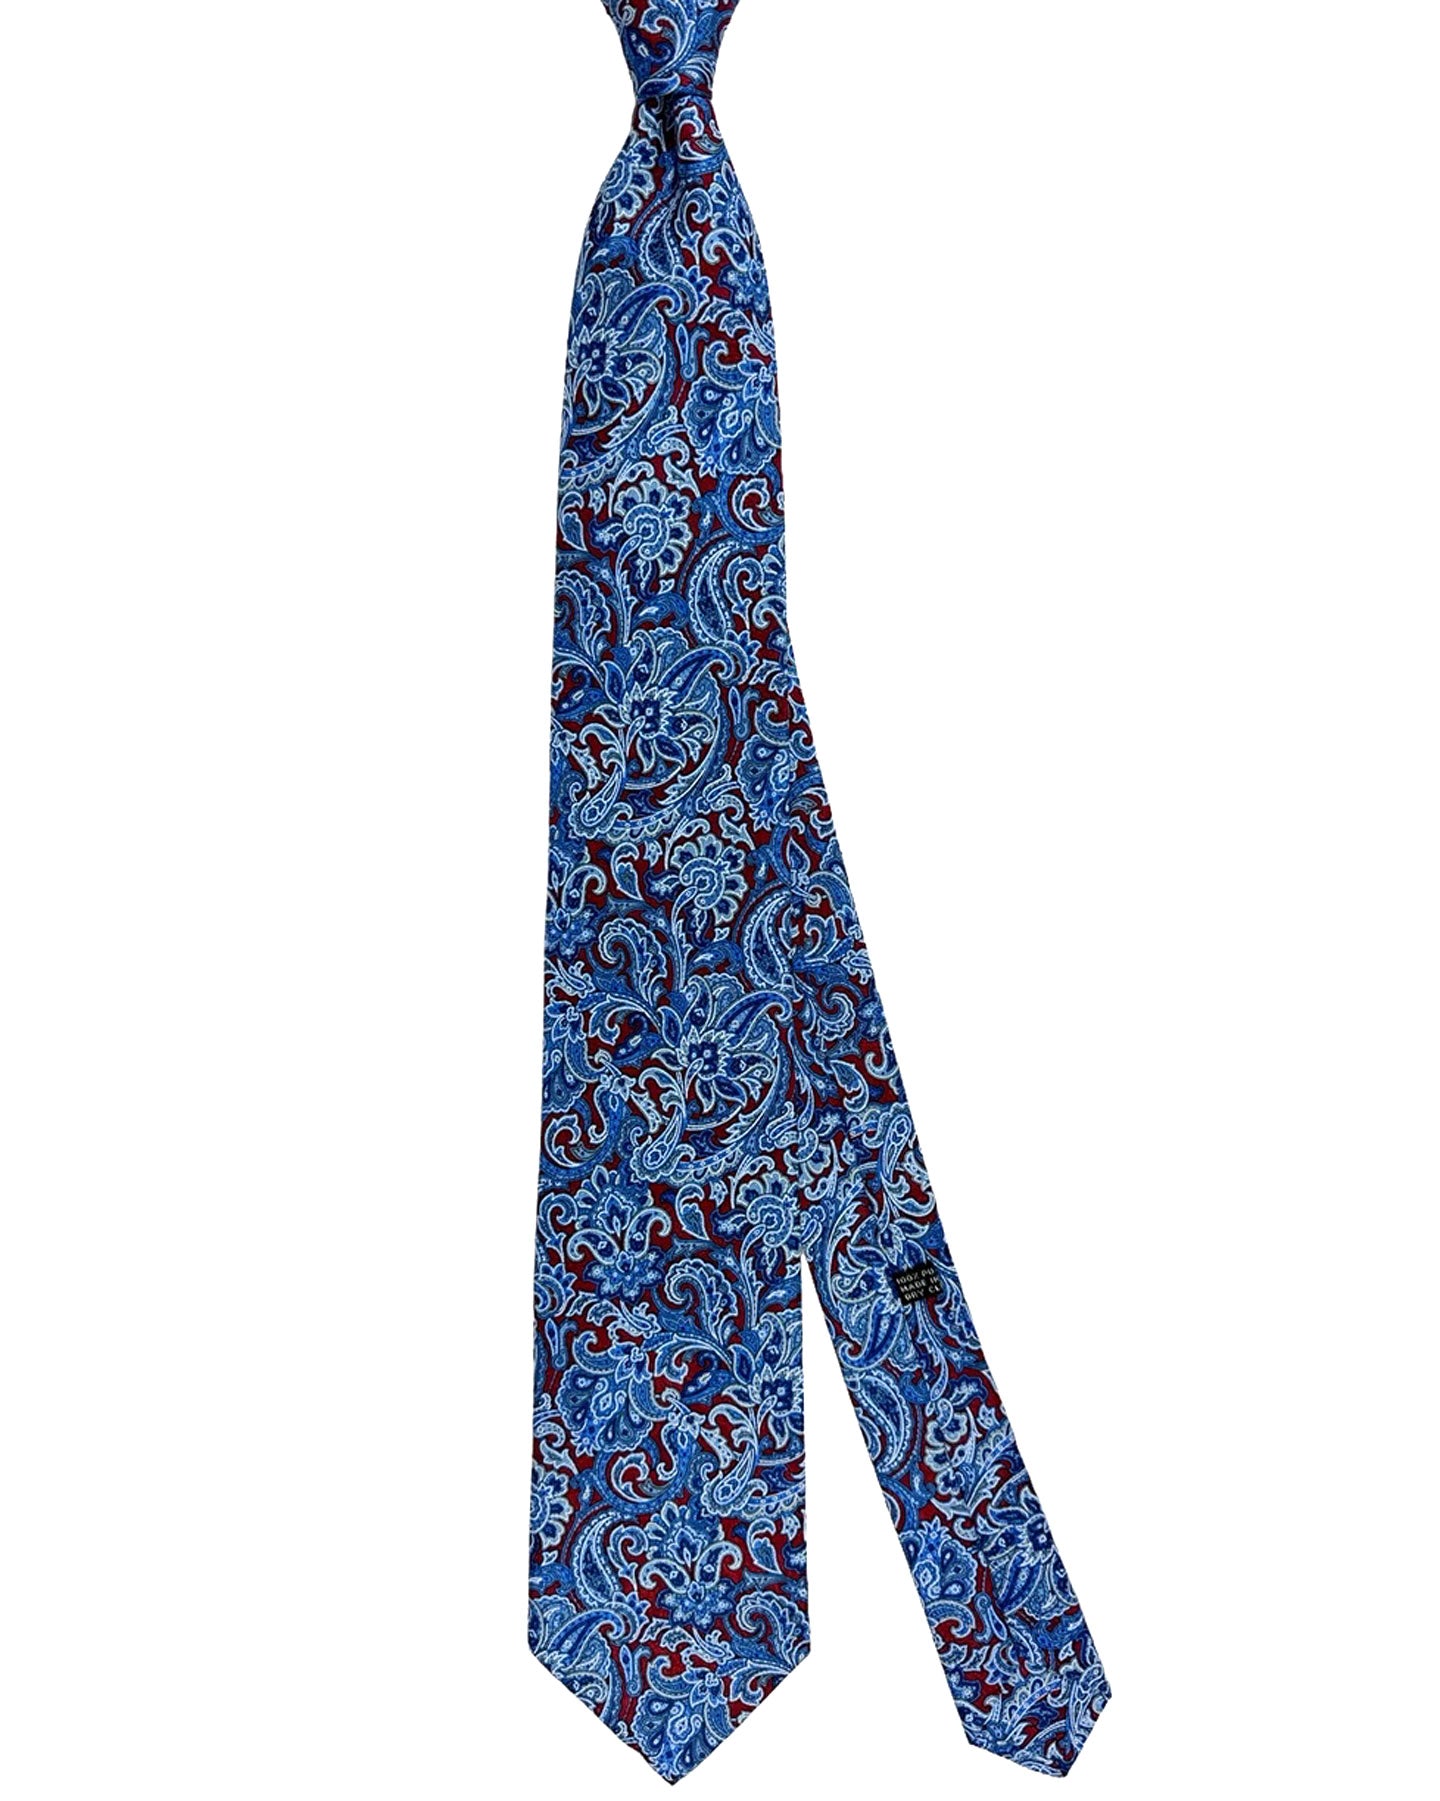 Stefano Ricci Silk Tie Bordeaux Blue Paisley Design